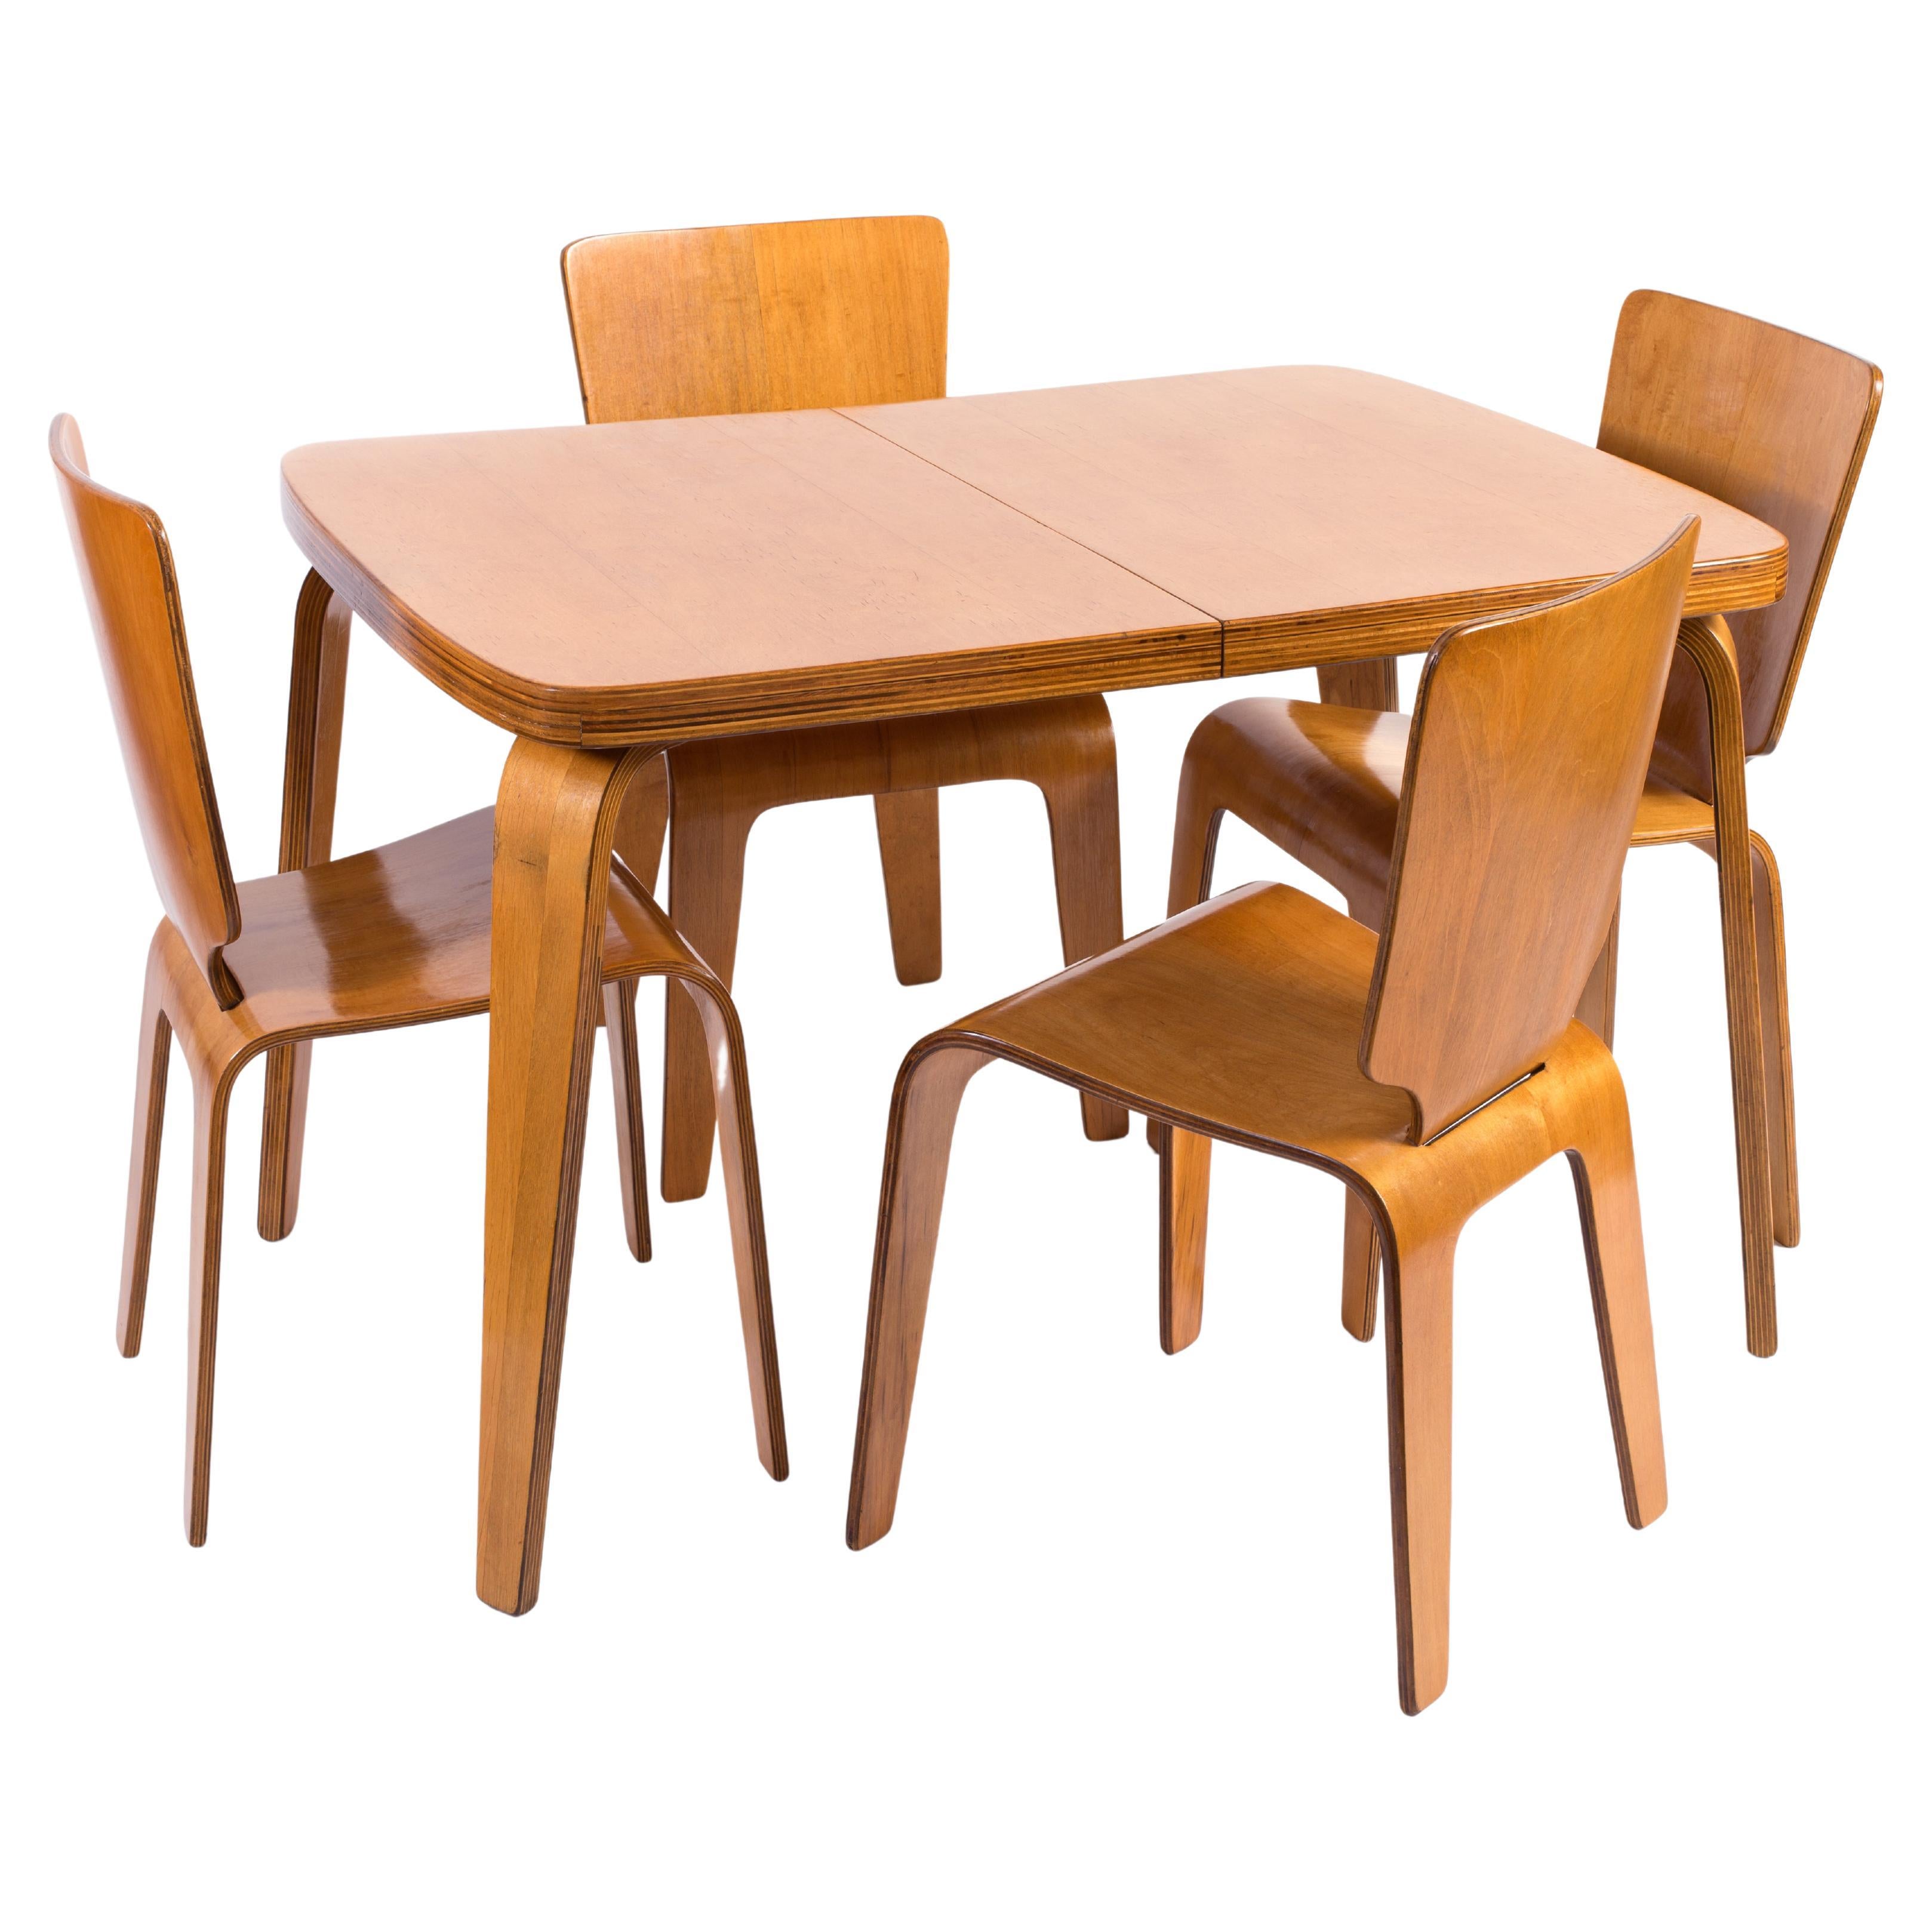 Thaden-Jordan 1940’s Herbert Von Thaden Mid-Century Modern Table/Chairs 5pc Set For Sale